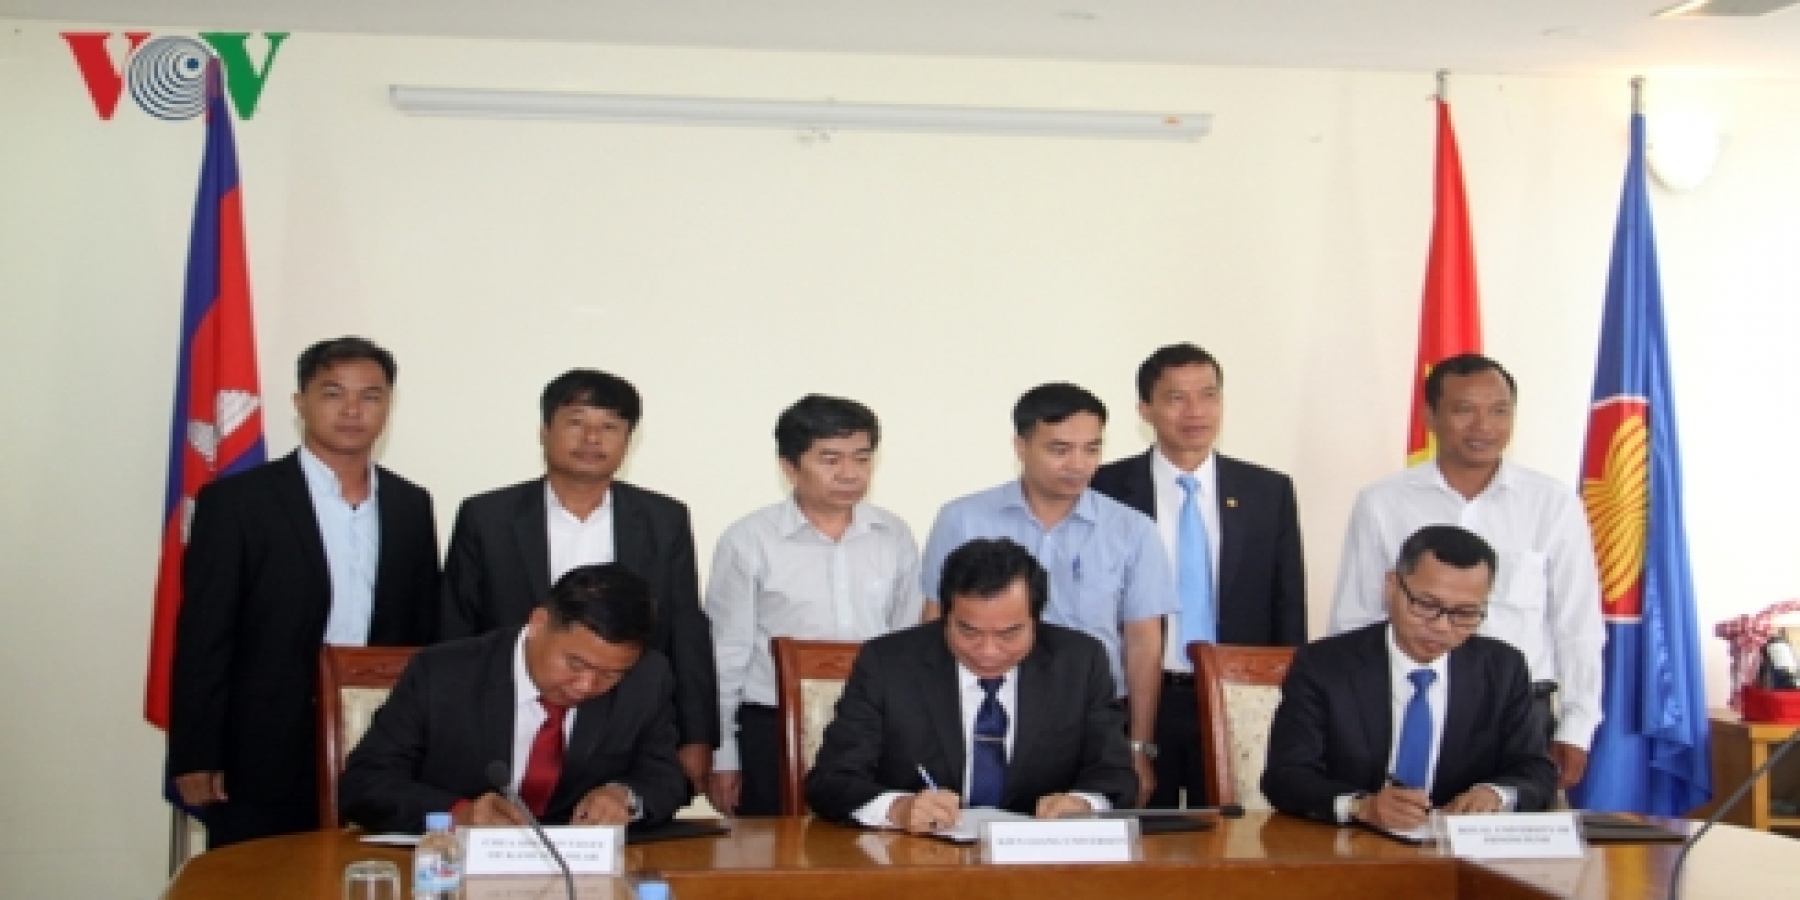 3 trường đại học của Việt Nam và Campuchia đã ký kết Bản ghi nhớ để tiếp tục đẩy mạnh hơn nữa hợp tác về đào tạo và nghiên cứu.